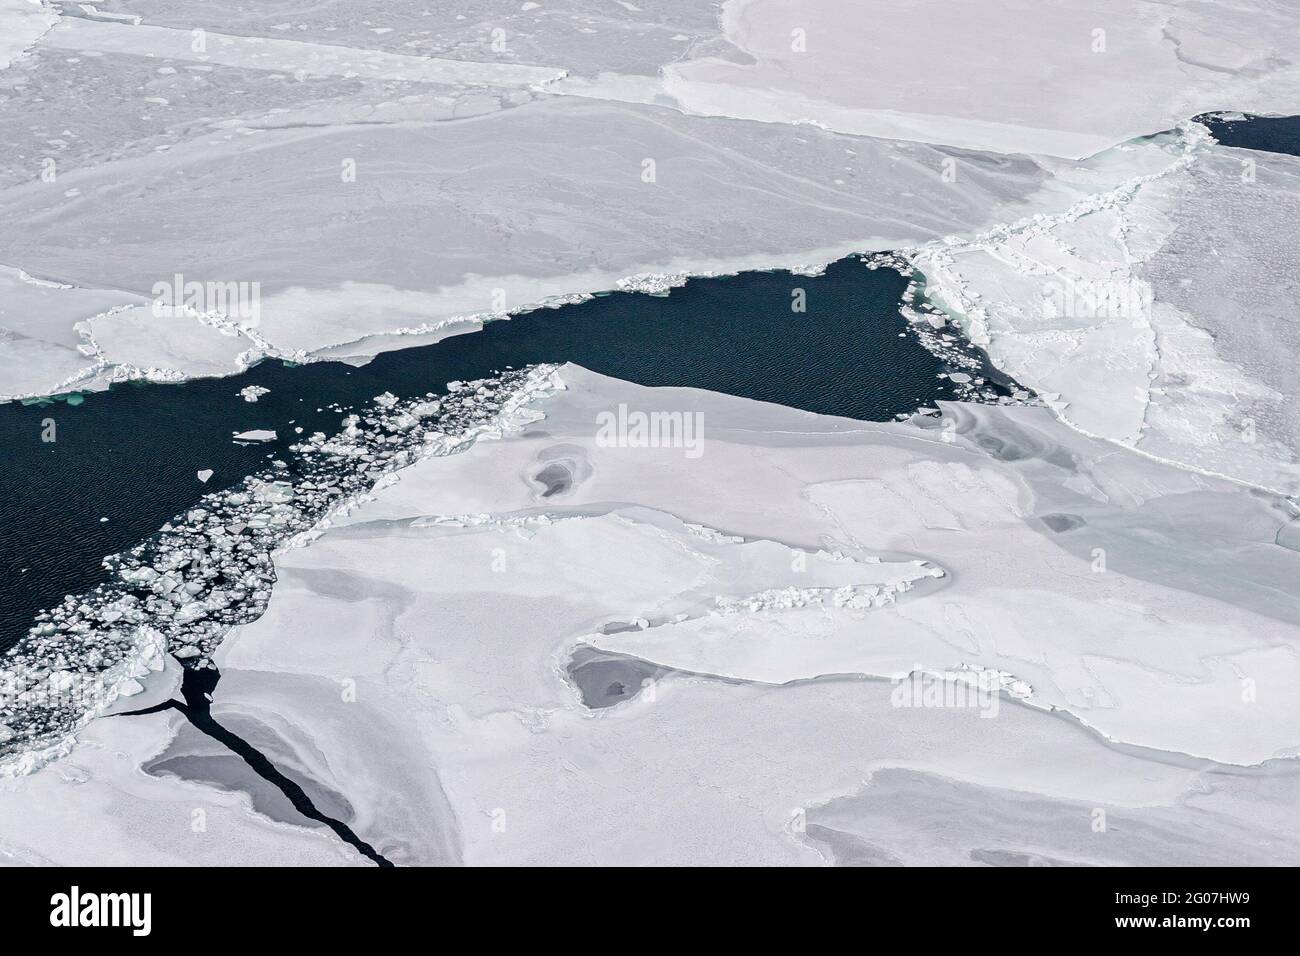 HSUS Photoshoot marzo 2006, salvare il campain foche sul ghiaccio galleggianti a nord dell'isola del Principe Edoardo, a nord-est al largo delle isole Magdalen, Golfo di Saint Lawre Foto Stock